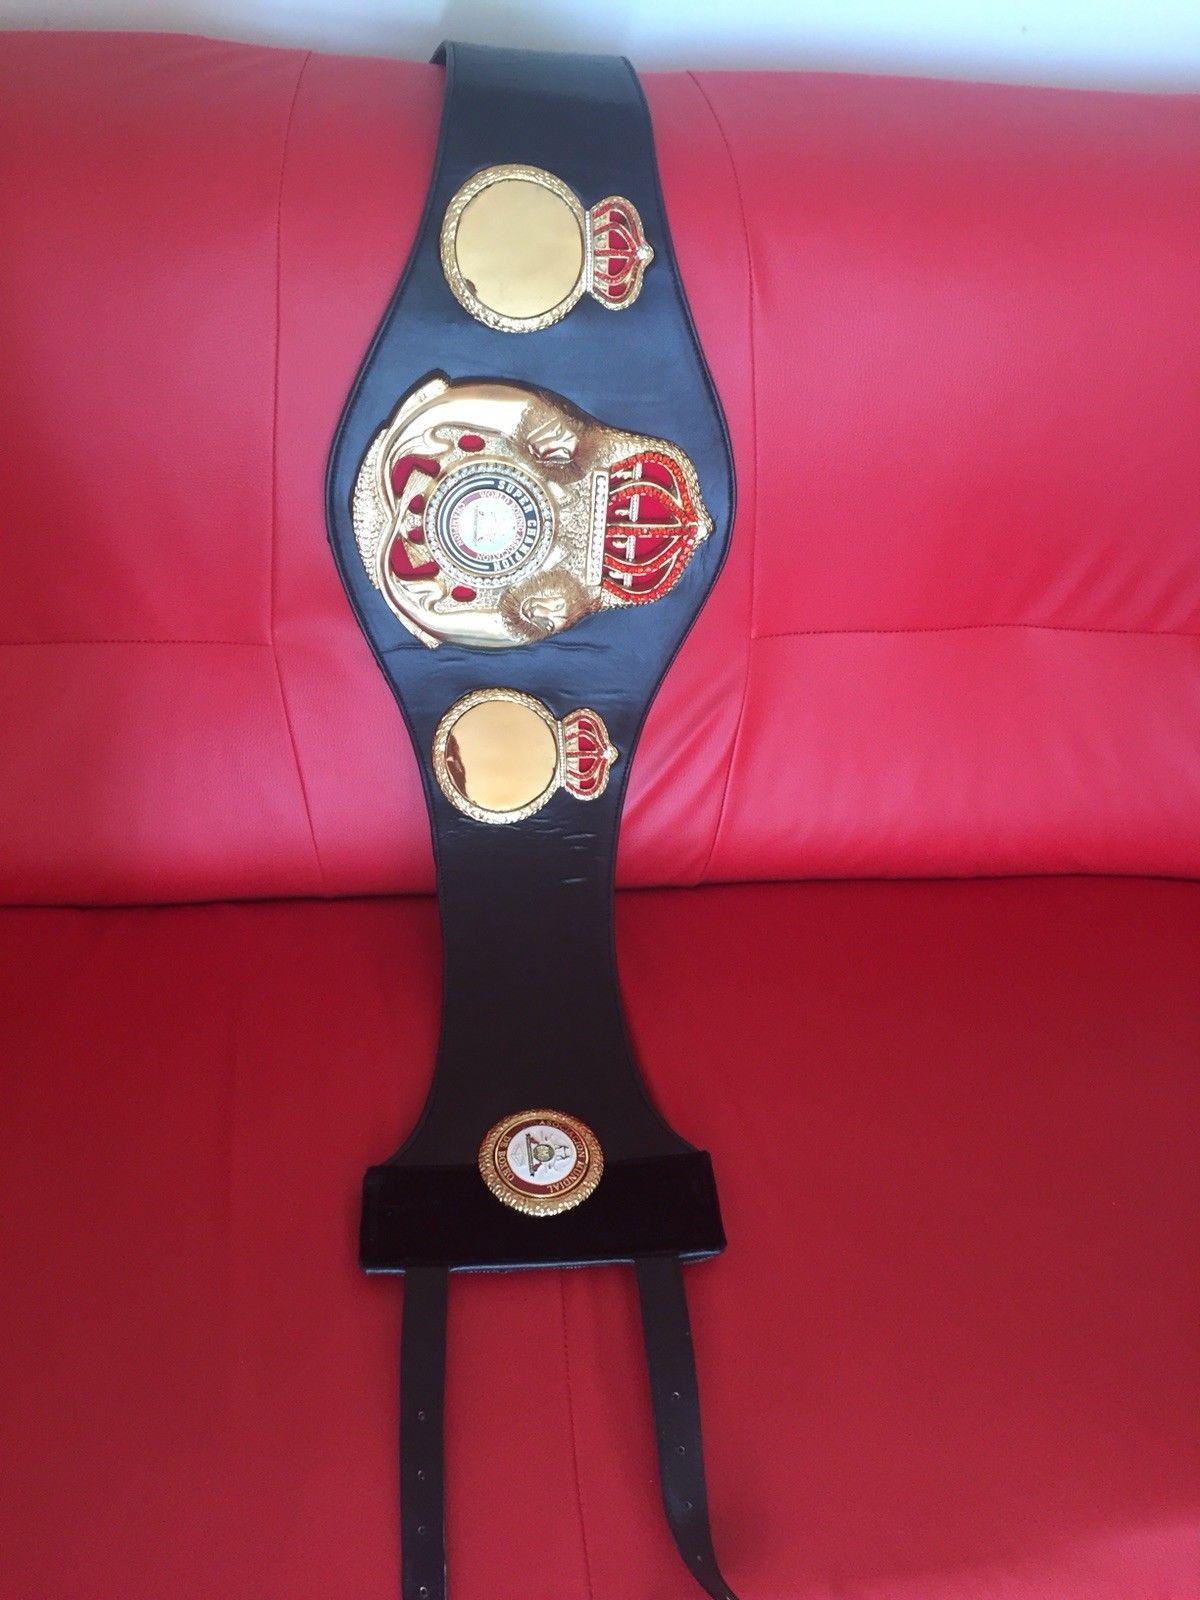 WBA SUPER WORLD Boxing Championship Belt - Zees Belts